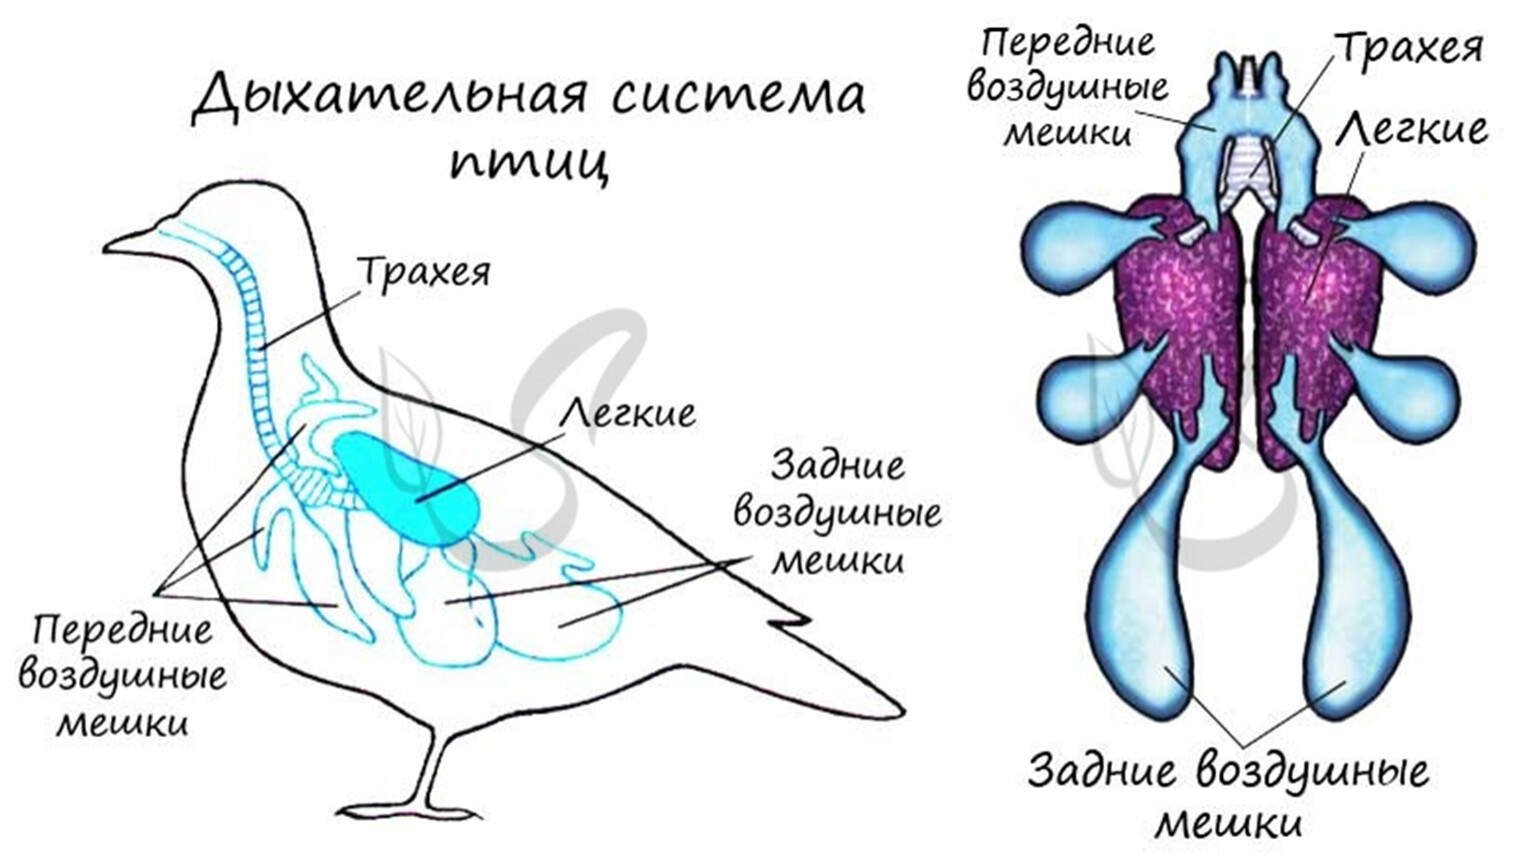 Воздушные мешки у птиц функция. Дыхательная система птиц анатомия. Схема дыхательной системы птицы. Дыхательная система птиц рисунок. Строение дыхательной системы птиц.